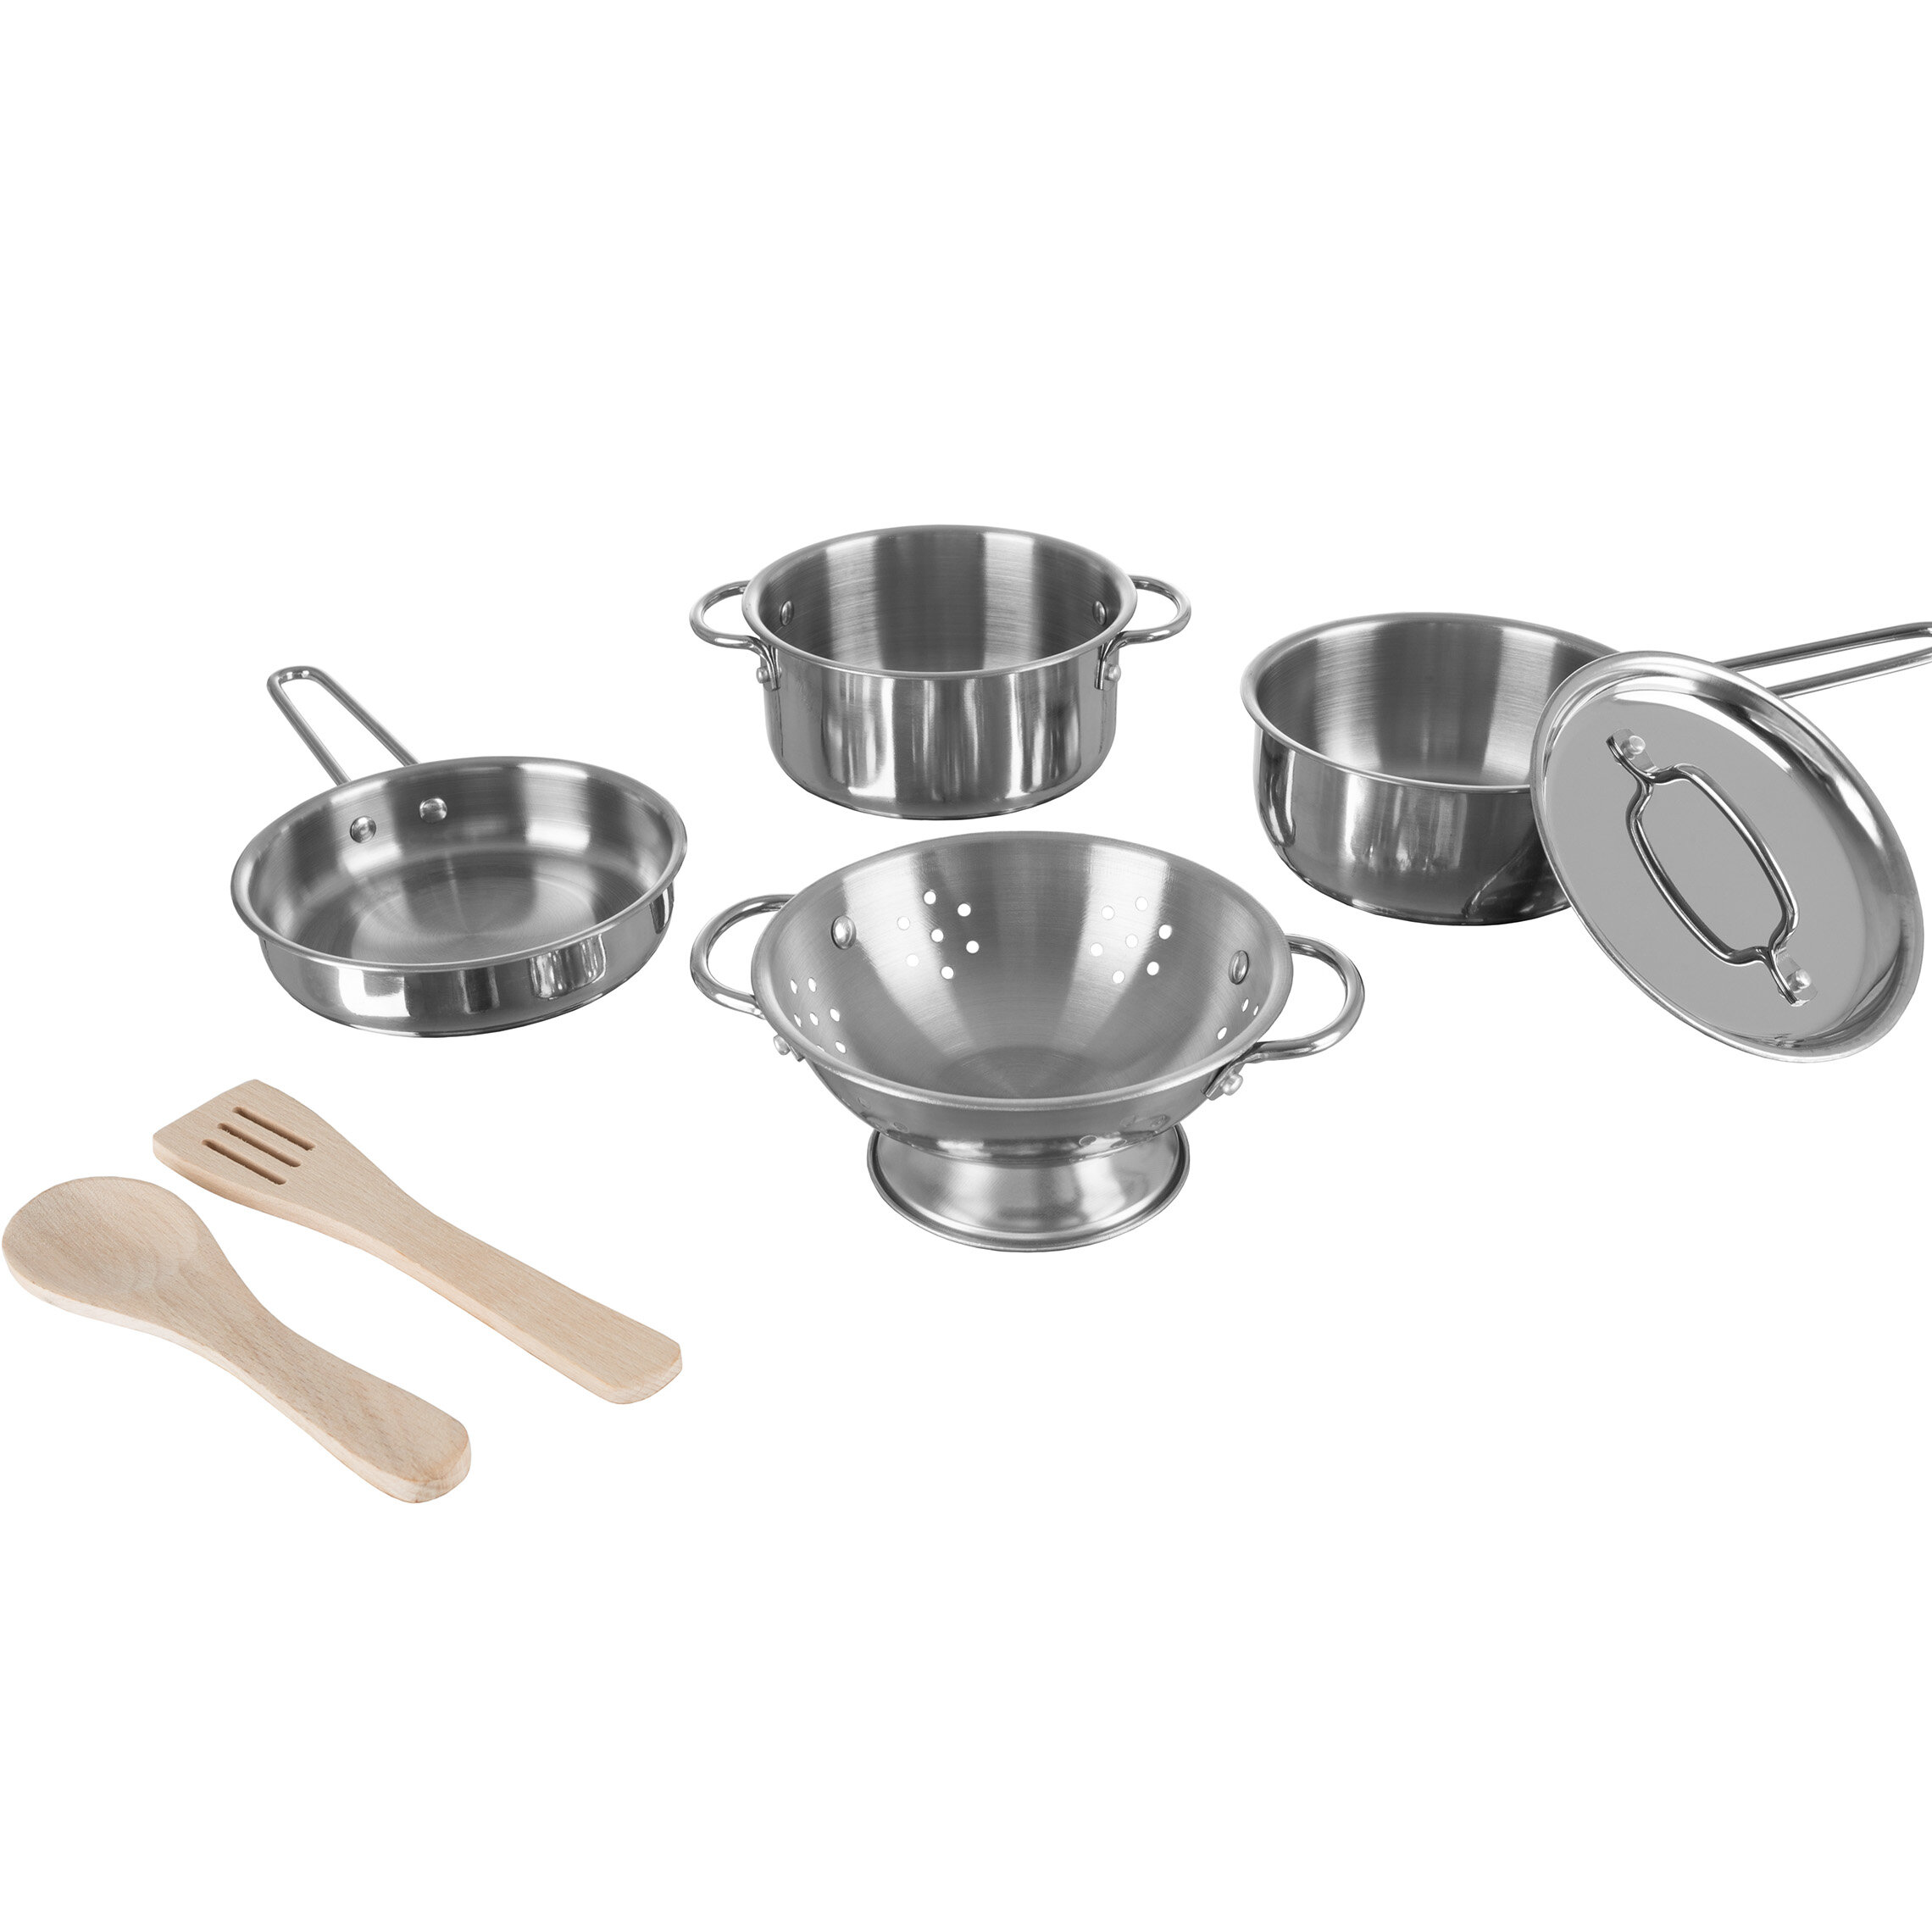 children's pots and pans set